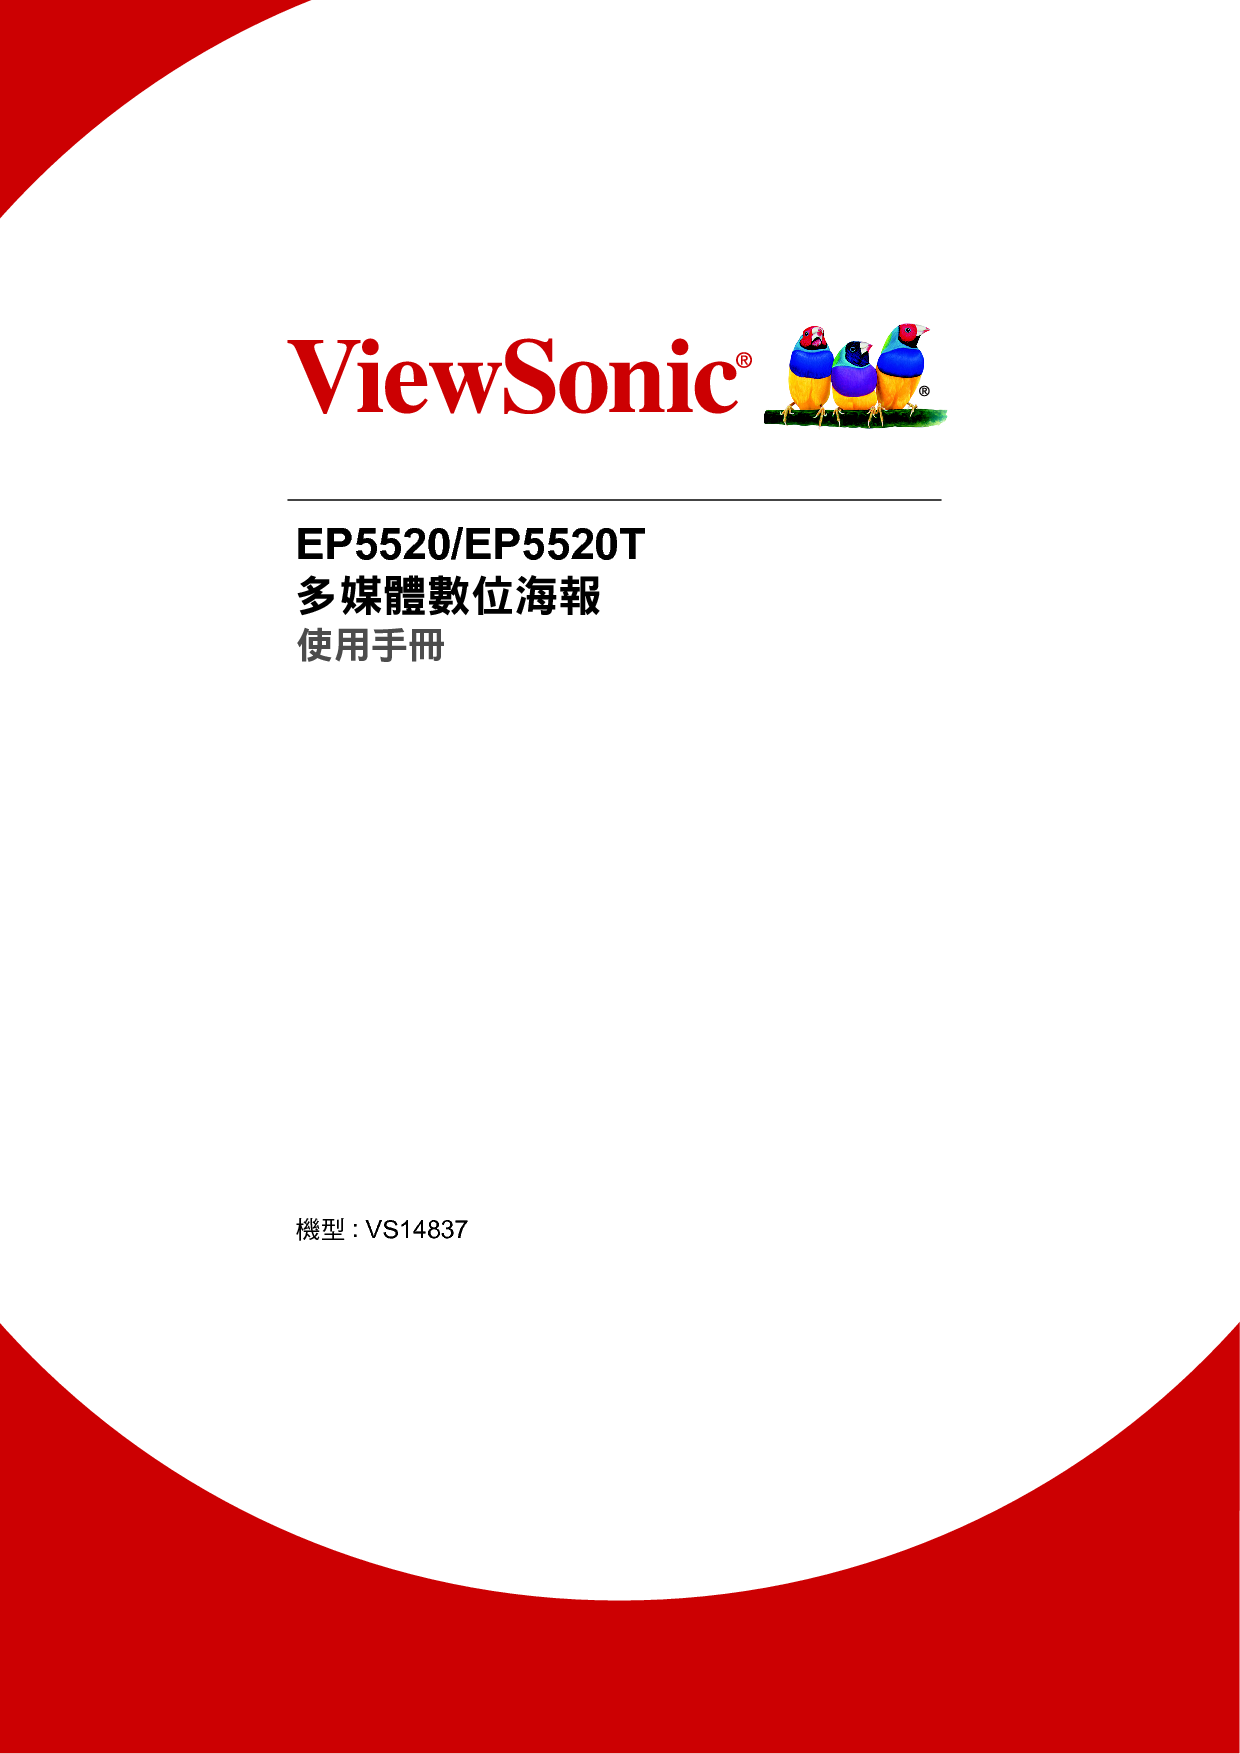 优派 ViewSonic EP5520 繁体 使用说明书 封面